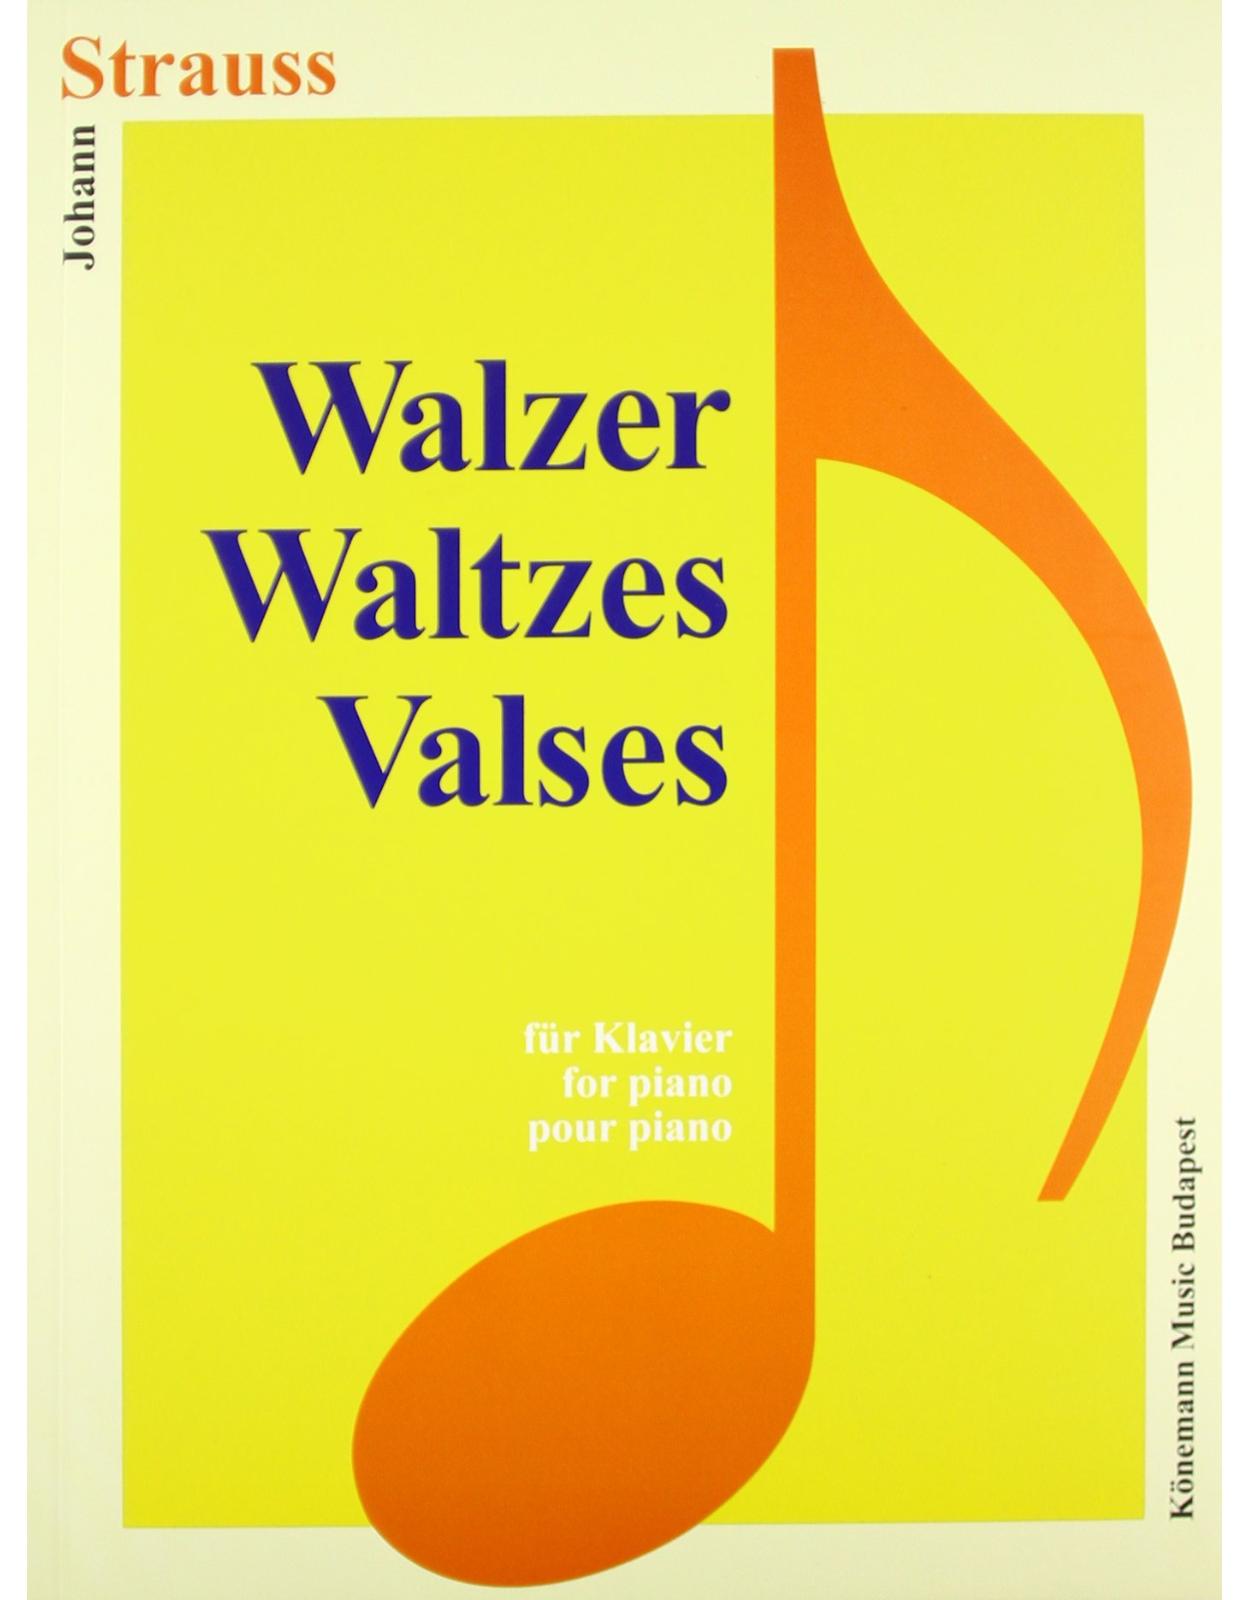 Strauss, Walzer